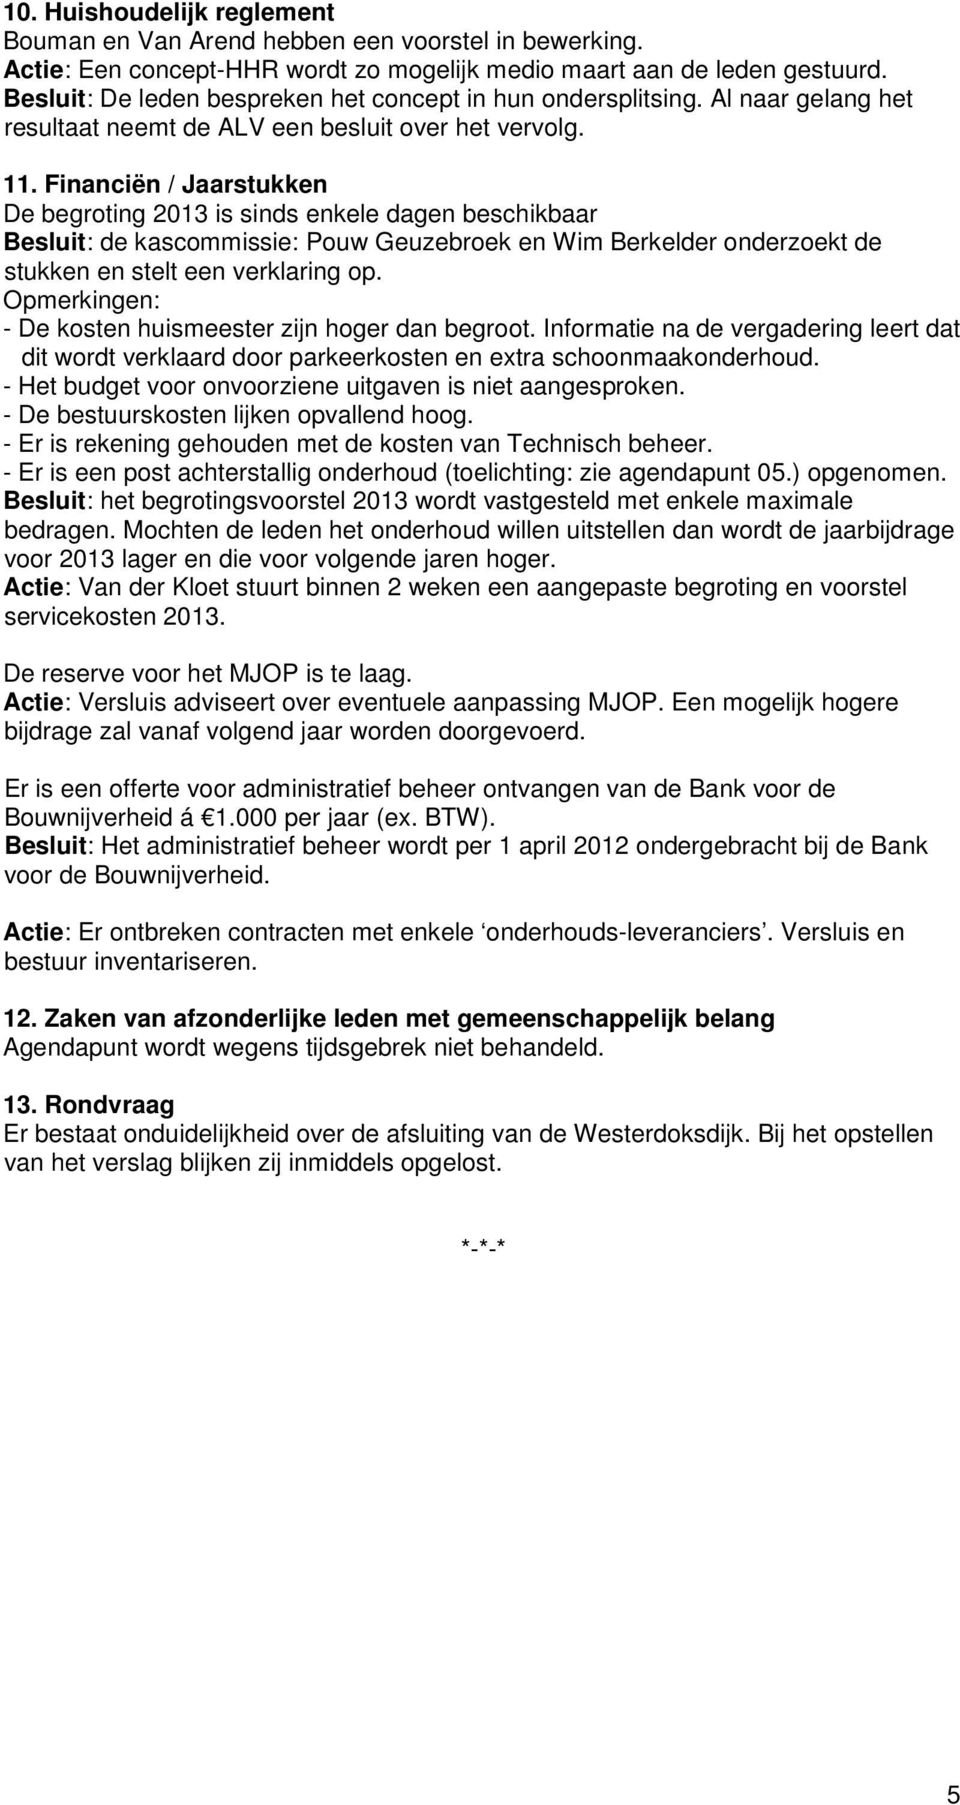 Financiën / Jaarstukken De begroting 2013 is sinds enkele dagen beschikbaar Besluit: de kascommissie: Pouw Geuzebroek en Wim Berkelder onderzoekt de stukken en stelt een verklaring op.